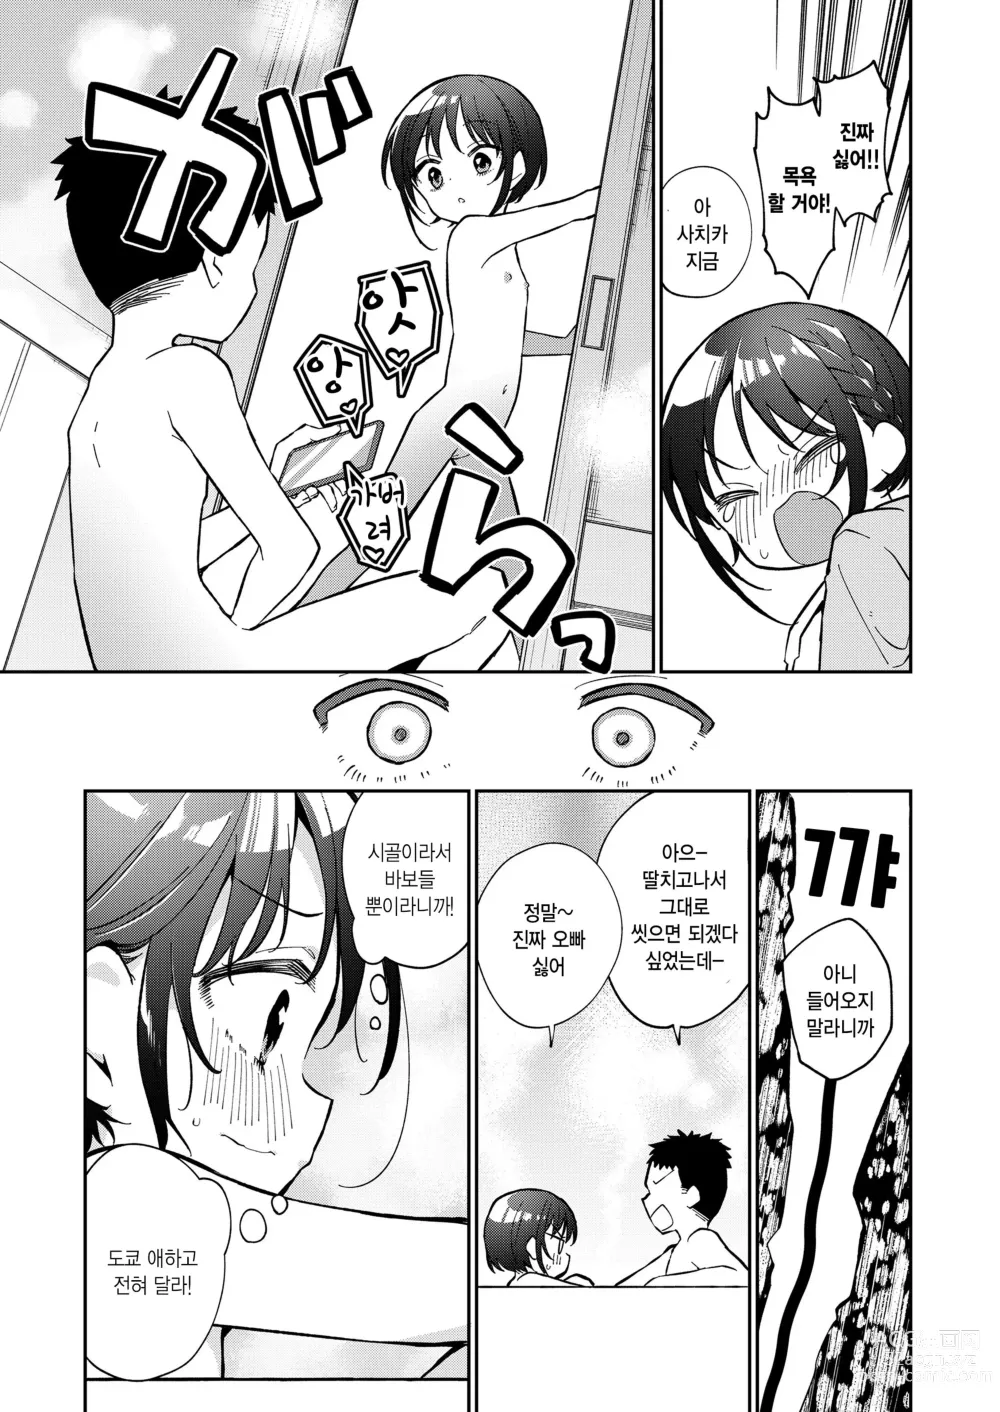 Page 9 of manga Watashi ga iki wo shiteru basho